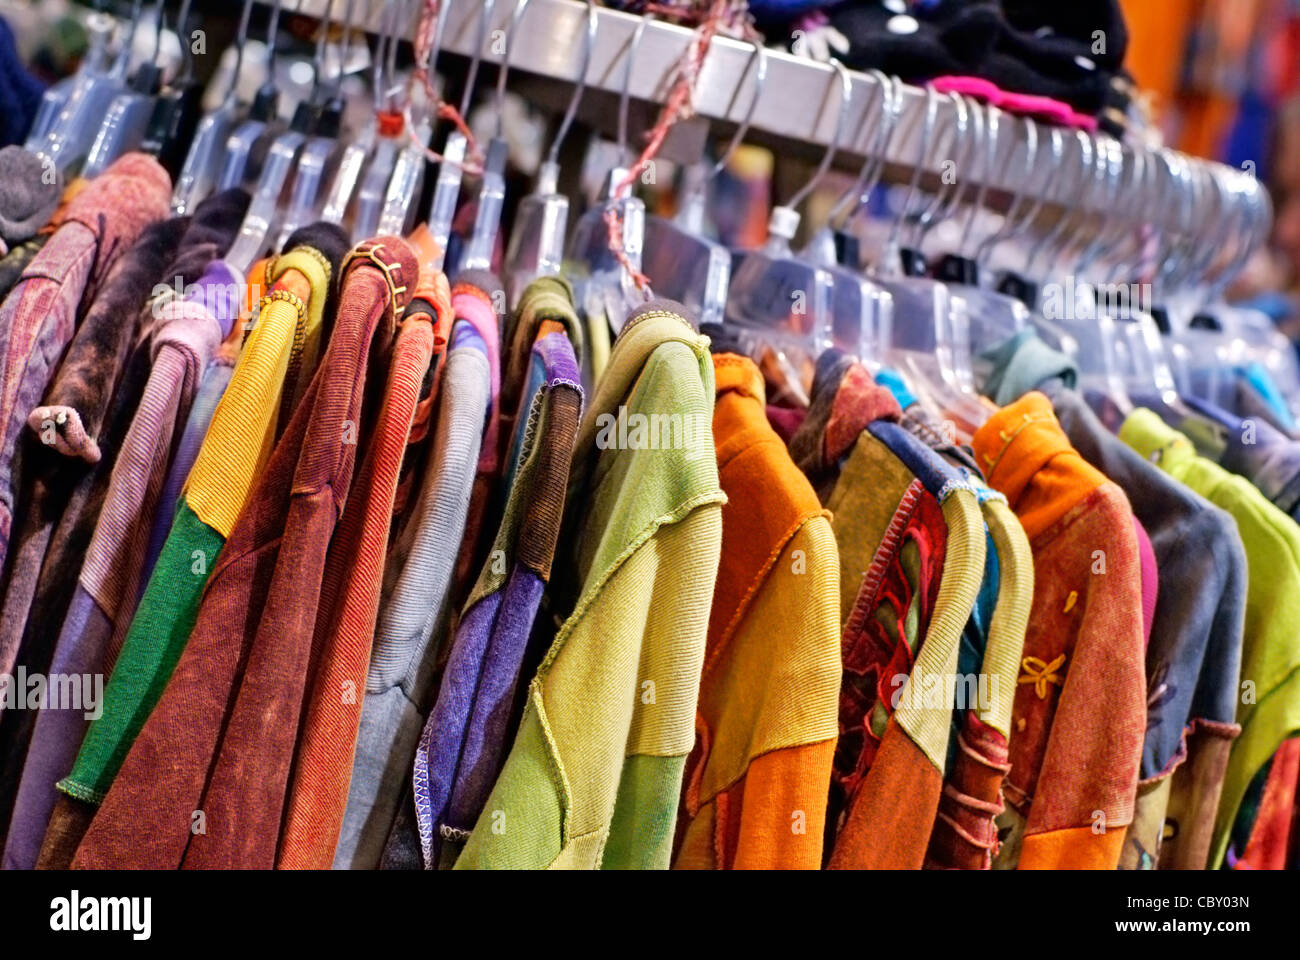 Des vêtements colorés accroché à un porte manteau dans un magasin